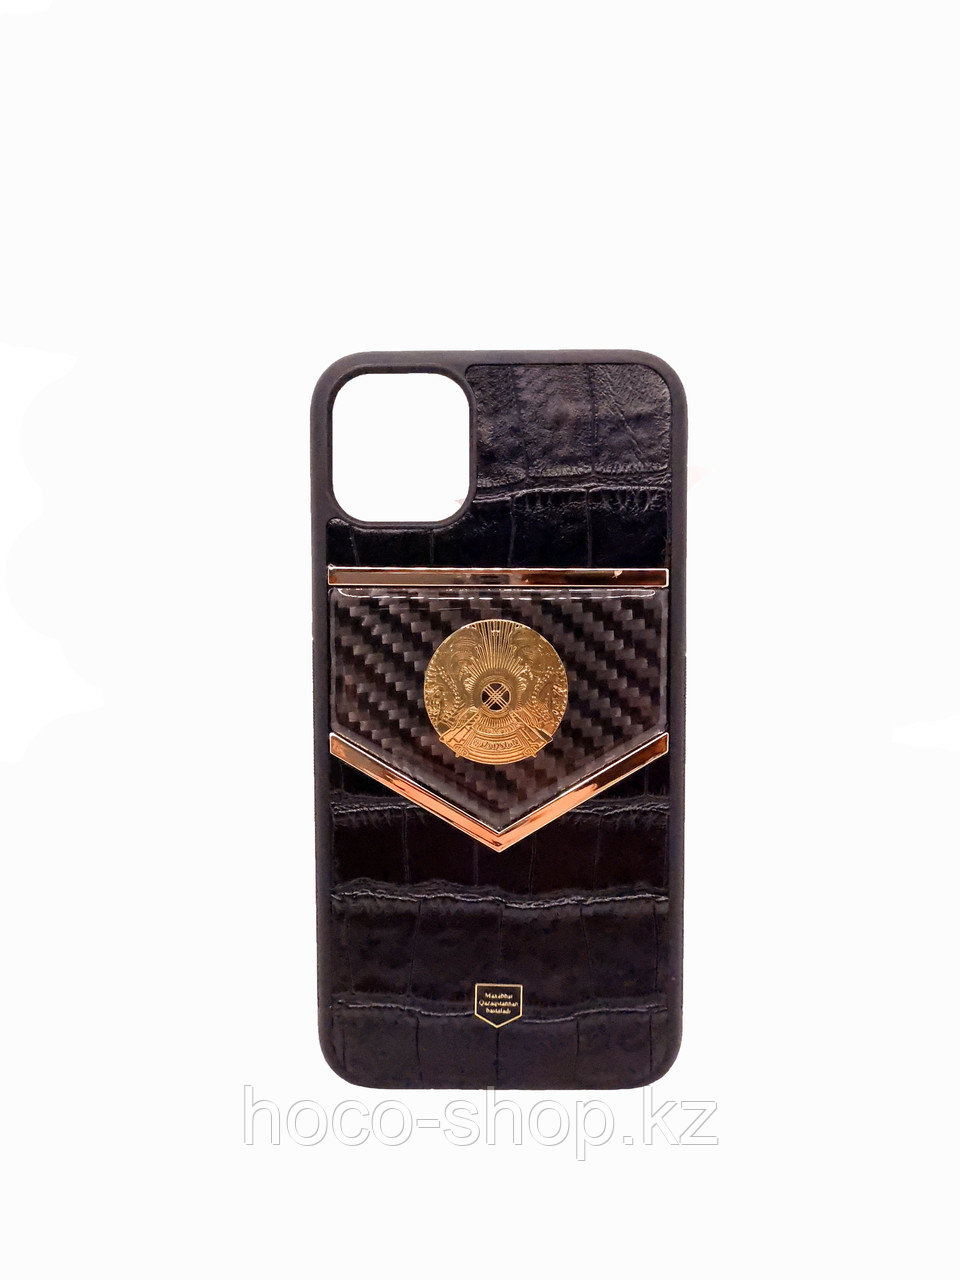 Защитный чехол кожаный для iPhone 11 Pro Max Герб Казахстана, черный